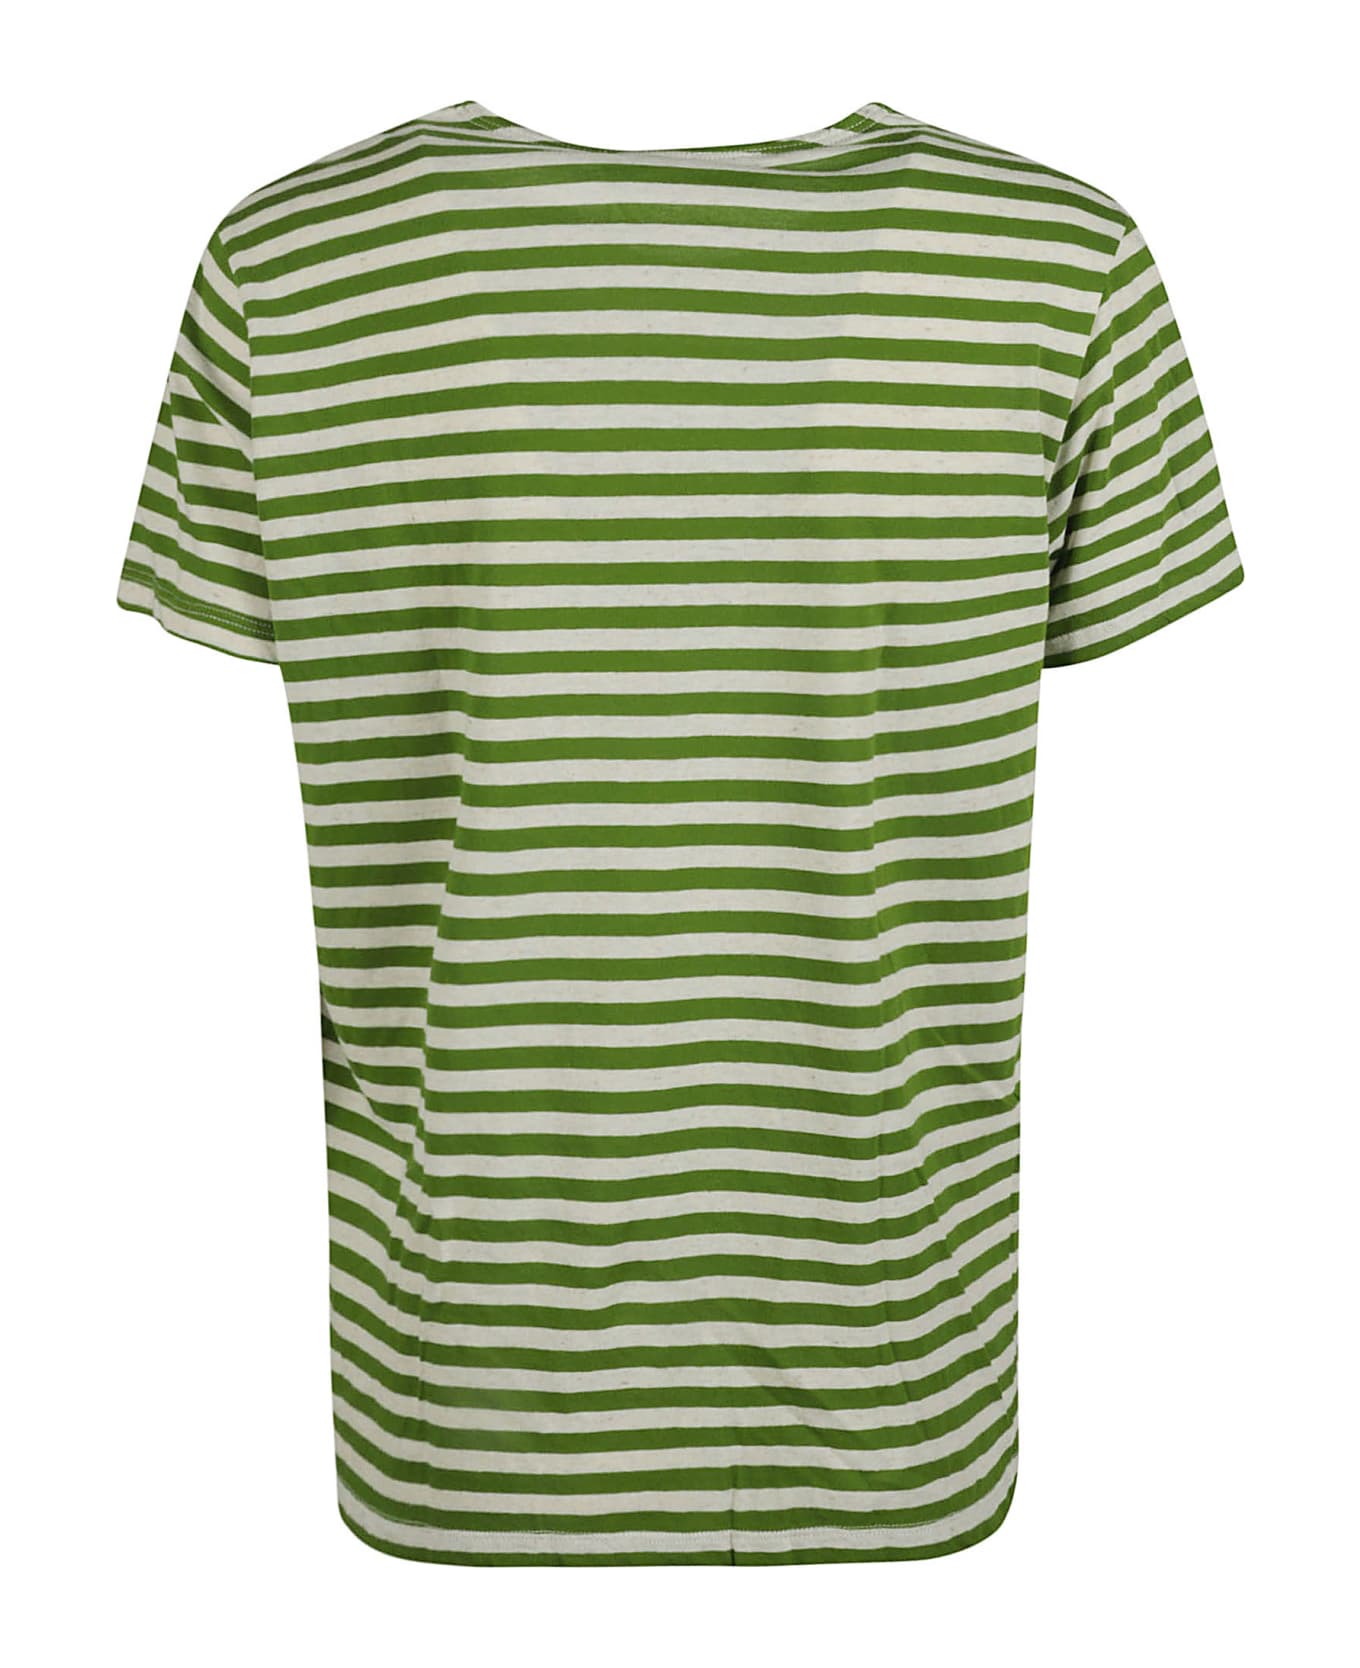 Phisique du Role Pinstripe T-shirt - Pistacchio/avorio Tシャツ